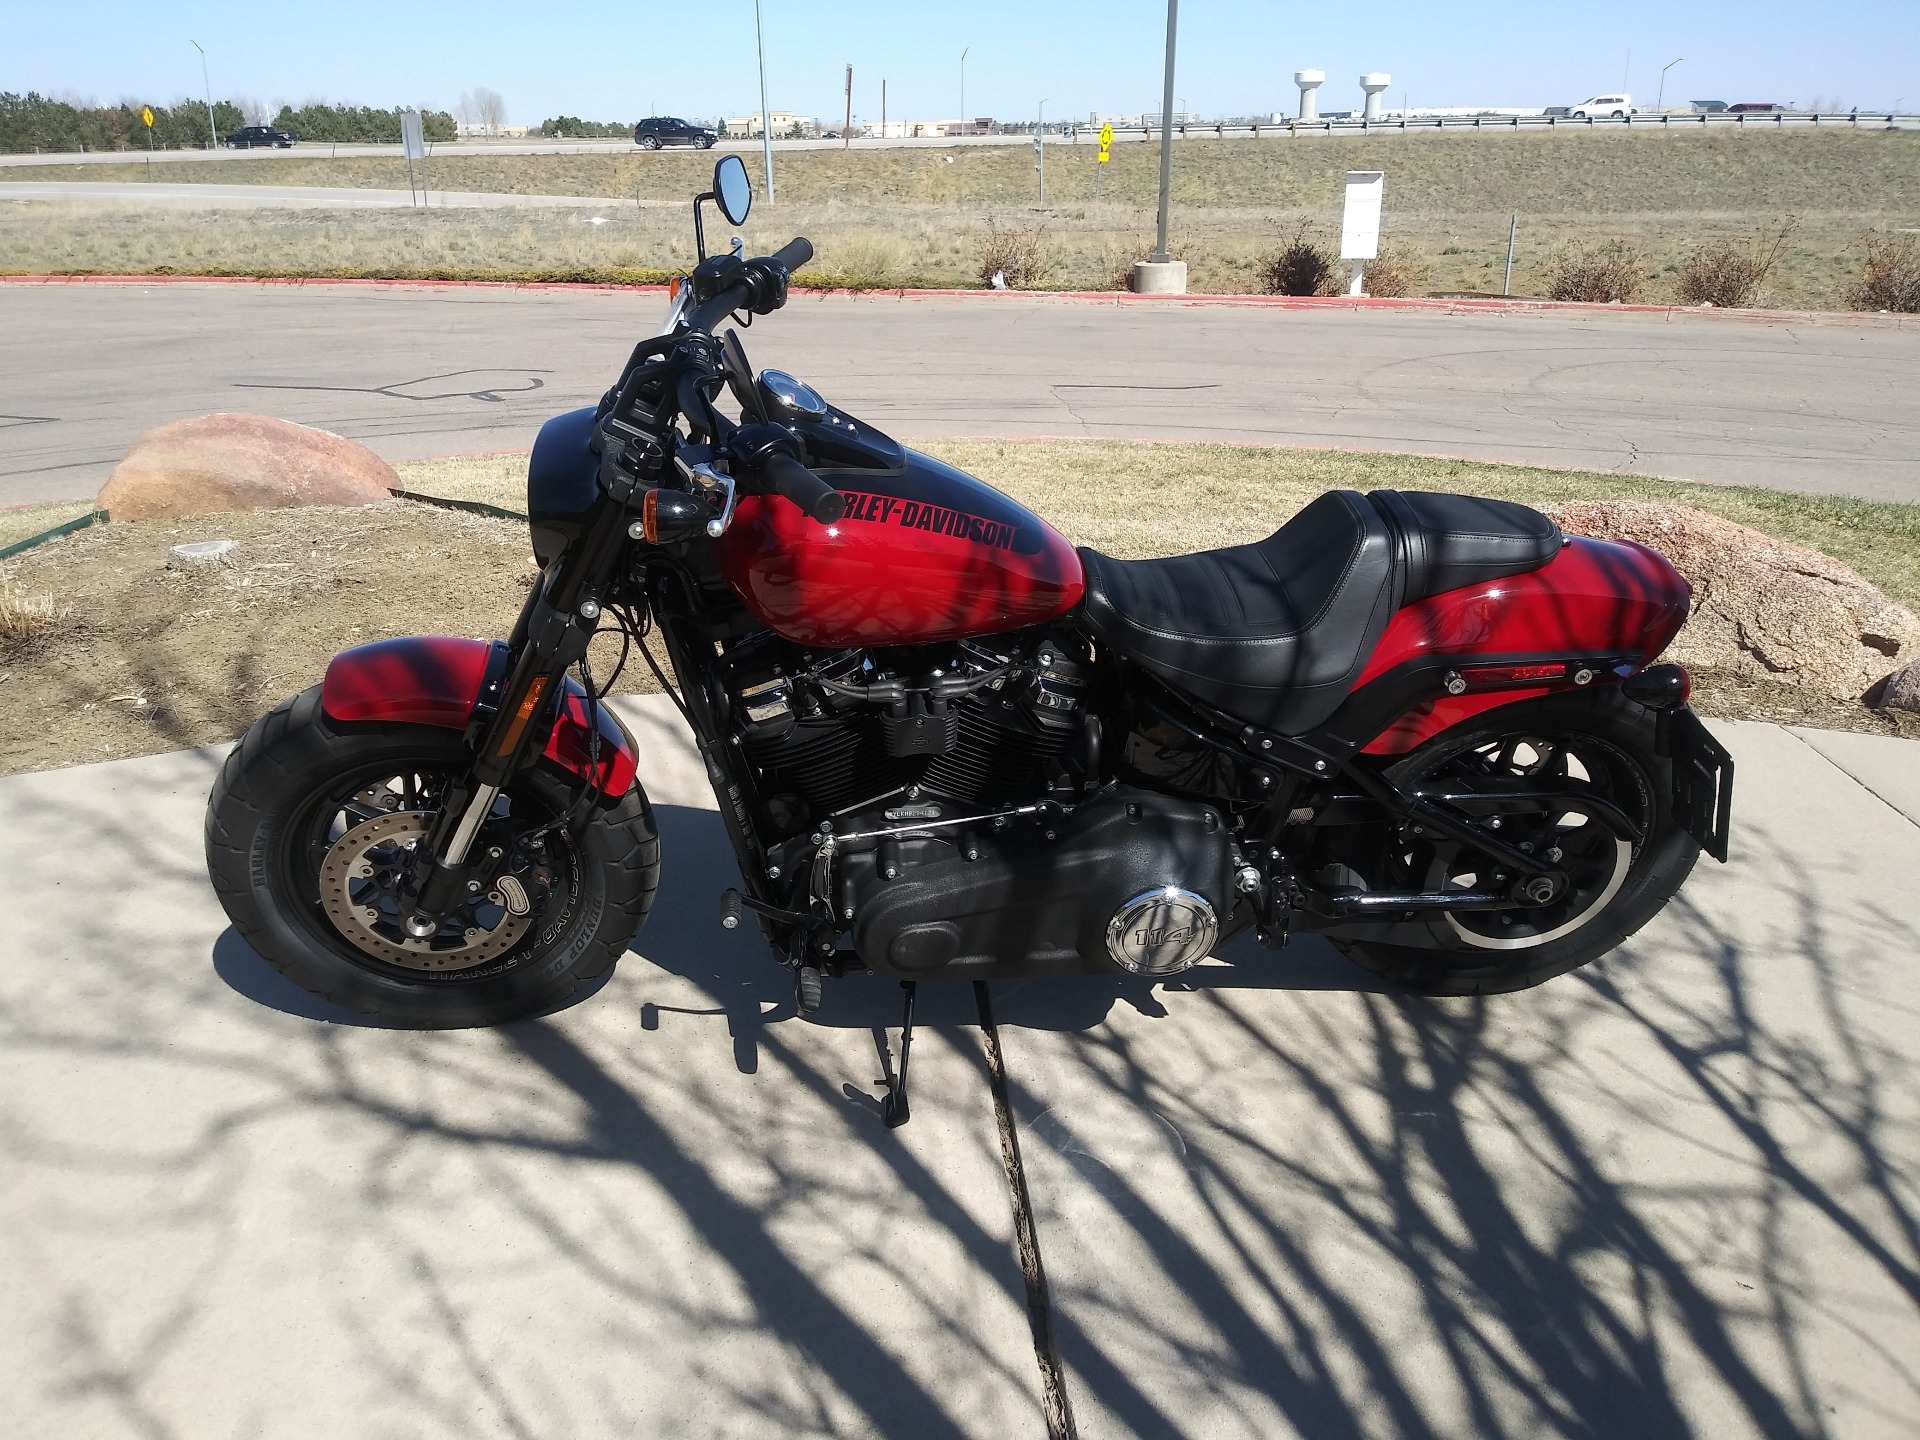 2021 Harley-Davidson Fat Bob® 114 in Loveland, Colorado - Photo 2